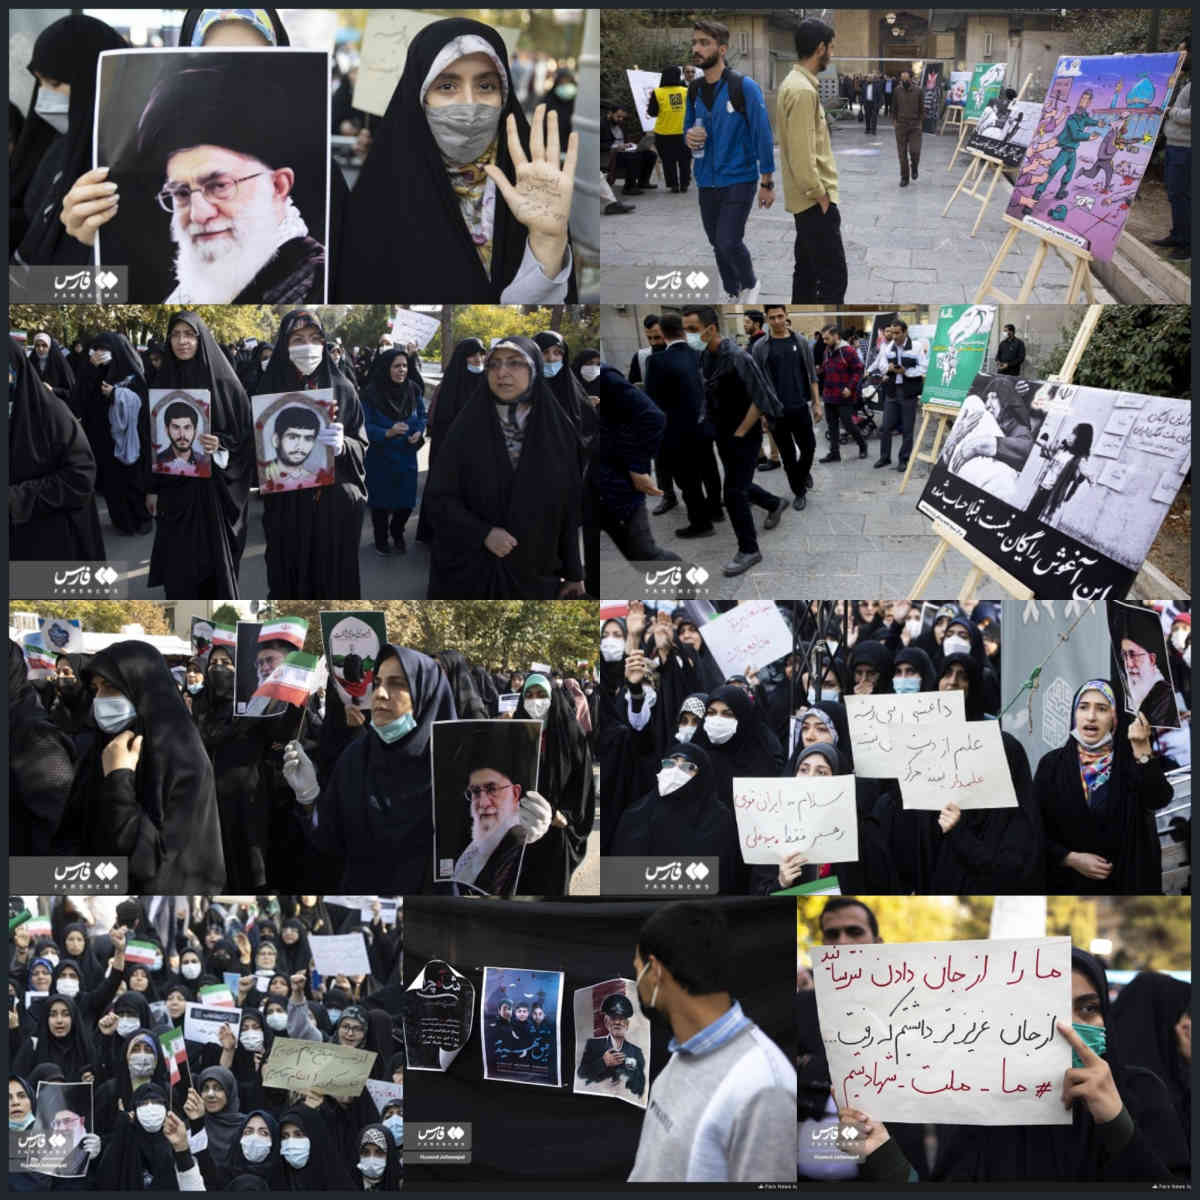 Gli studenti non hanno alcuna intenzione di fermare la protesta in Iran